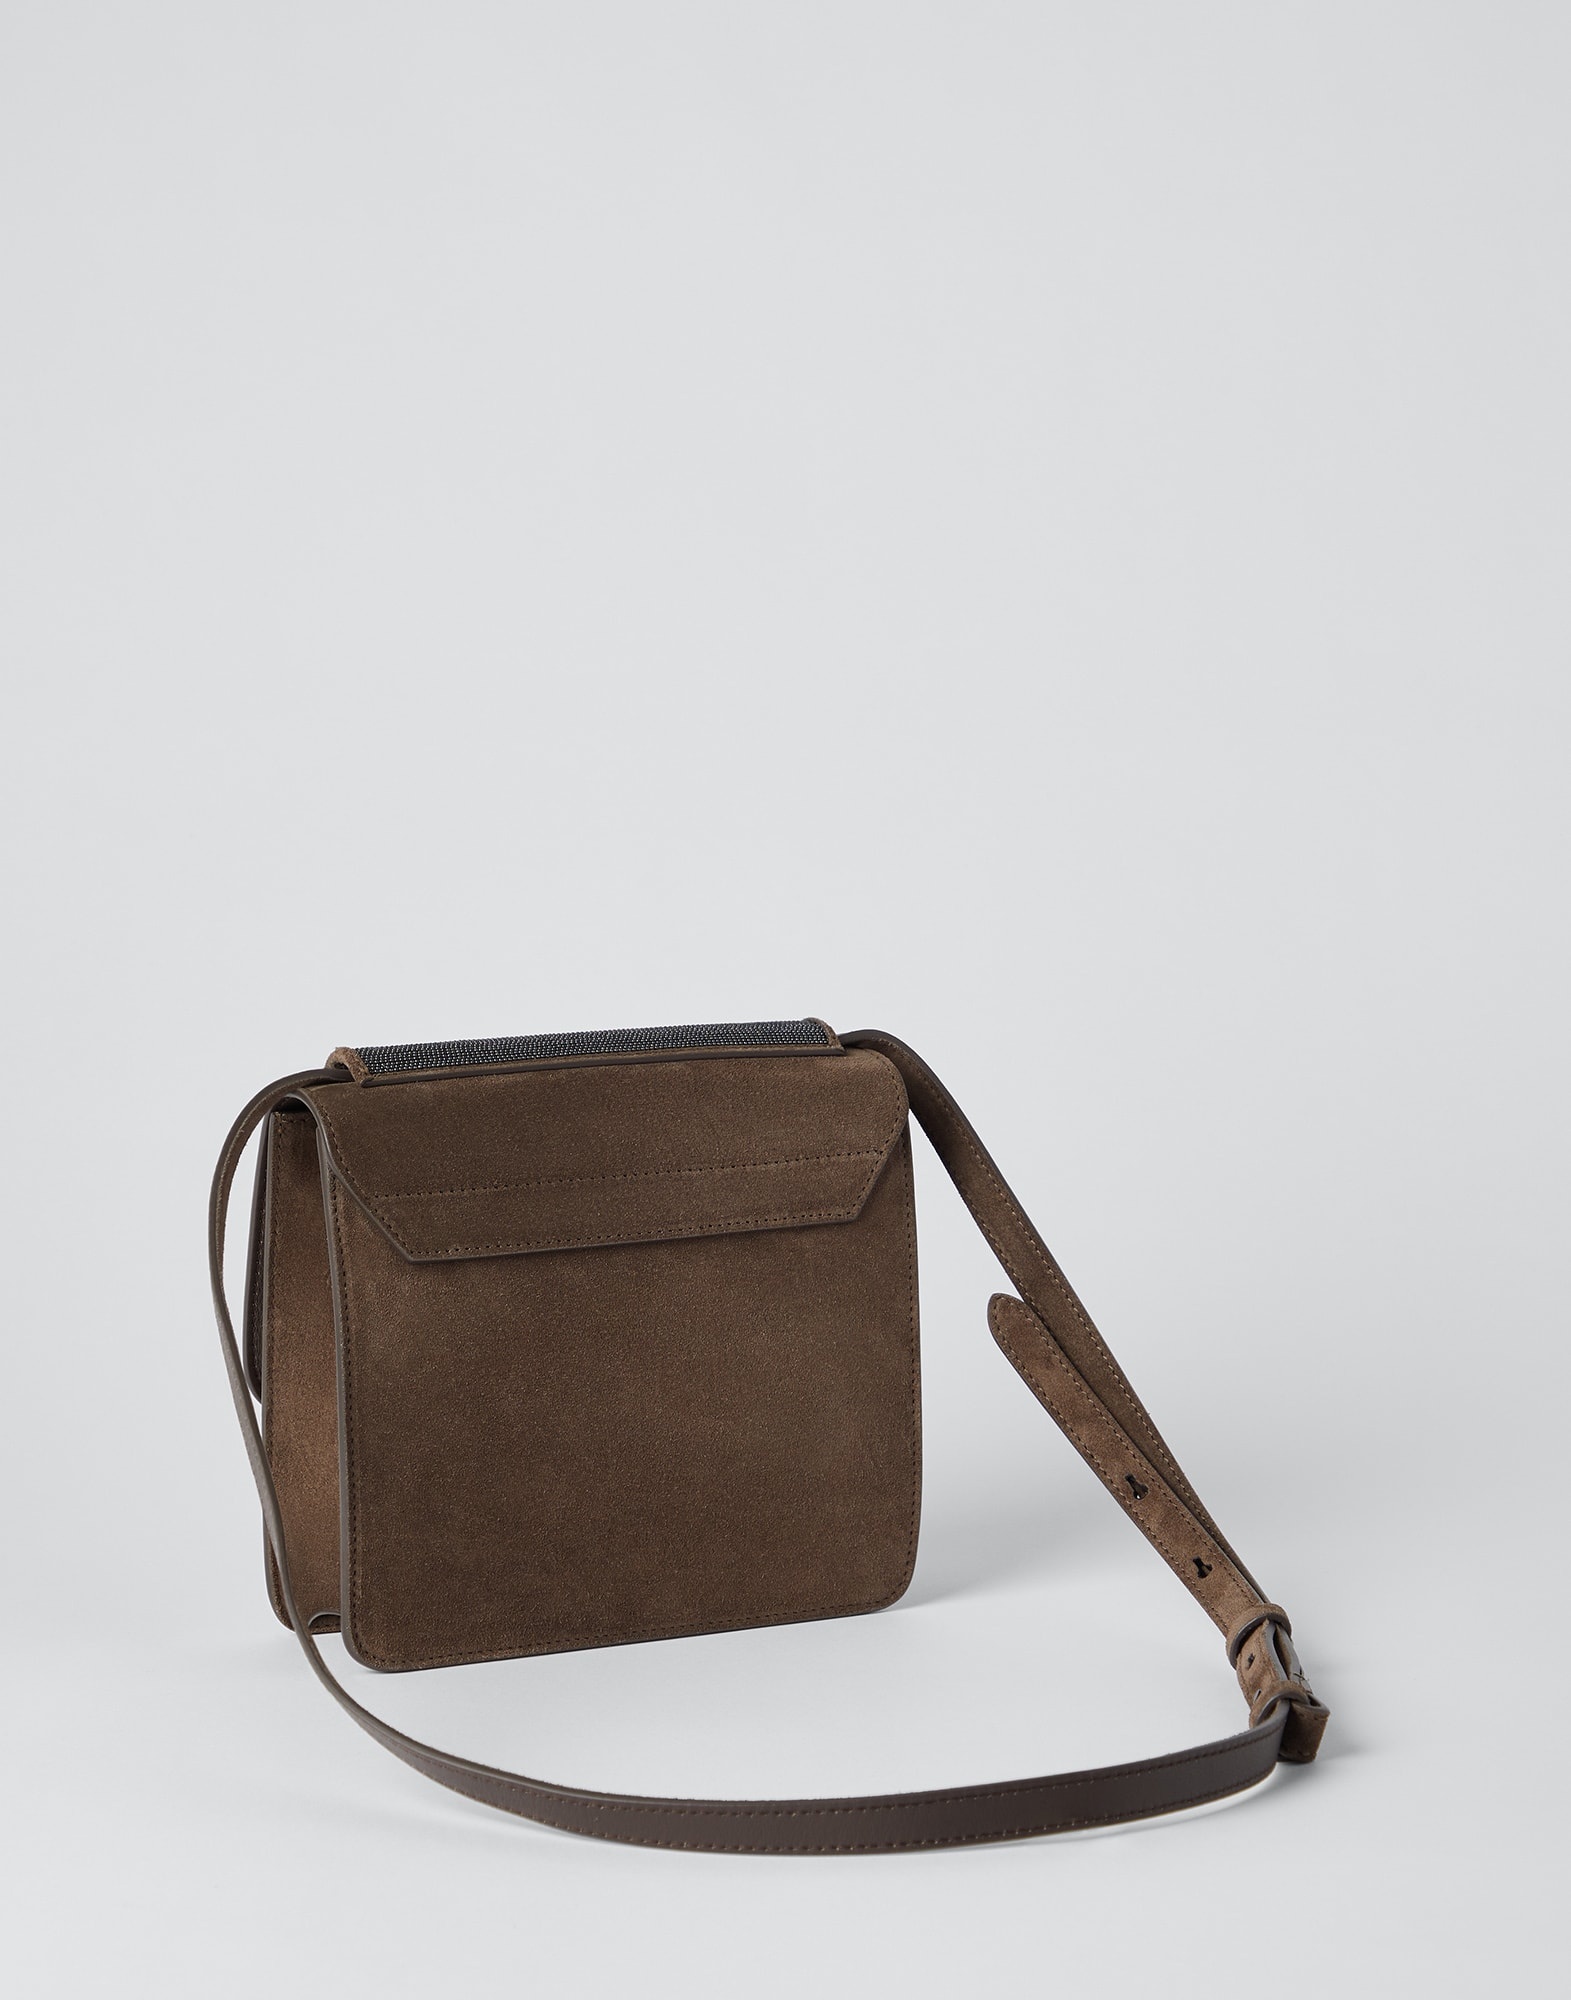 Brunello Cucinelli Precious Leather Bag Strap - Brown